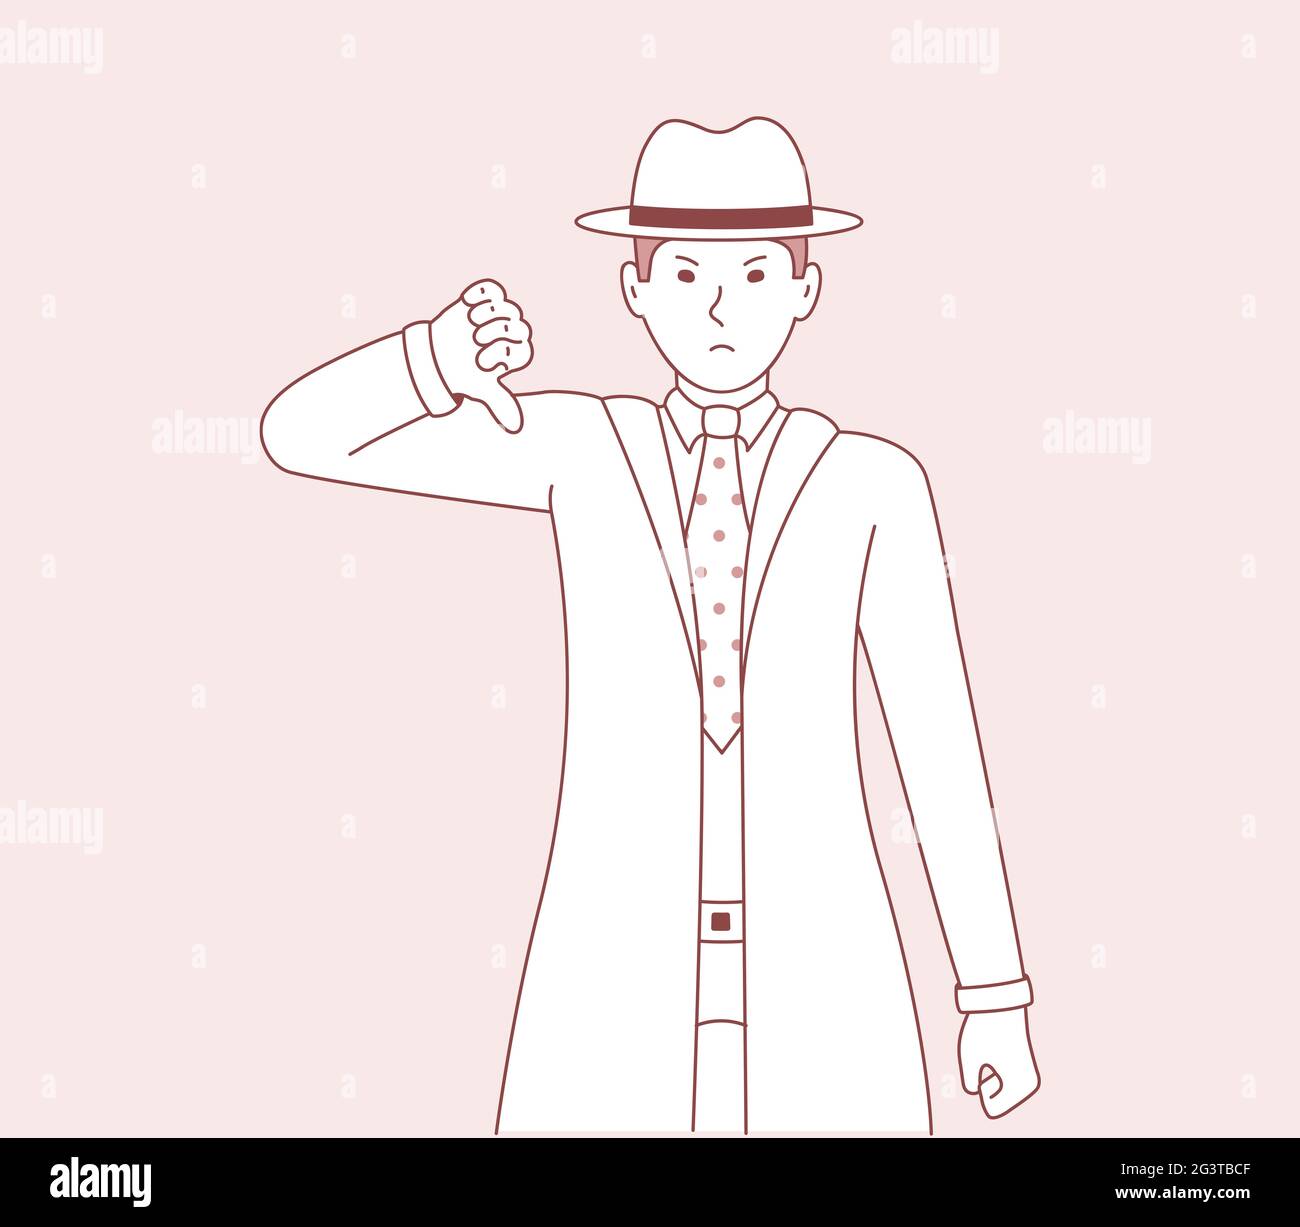 Vektor-Illustration eines Mannes, der eine Geste der Uneinigkeit und negativen Emotionen auf seinem Gesicht zeigt. Männer Detektiv Cartoon-Kunst Stockfoto